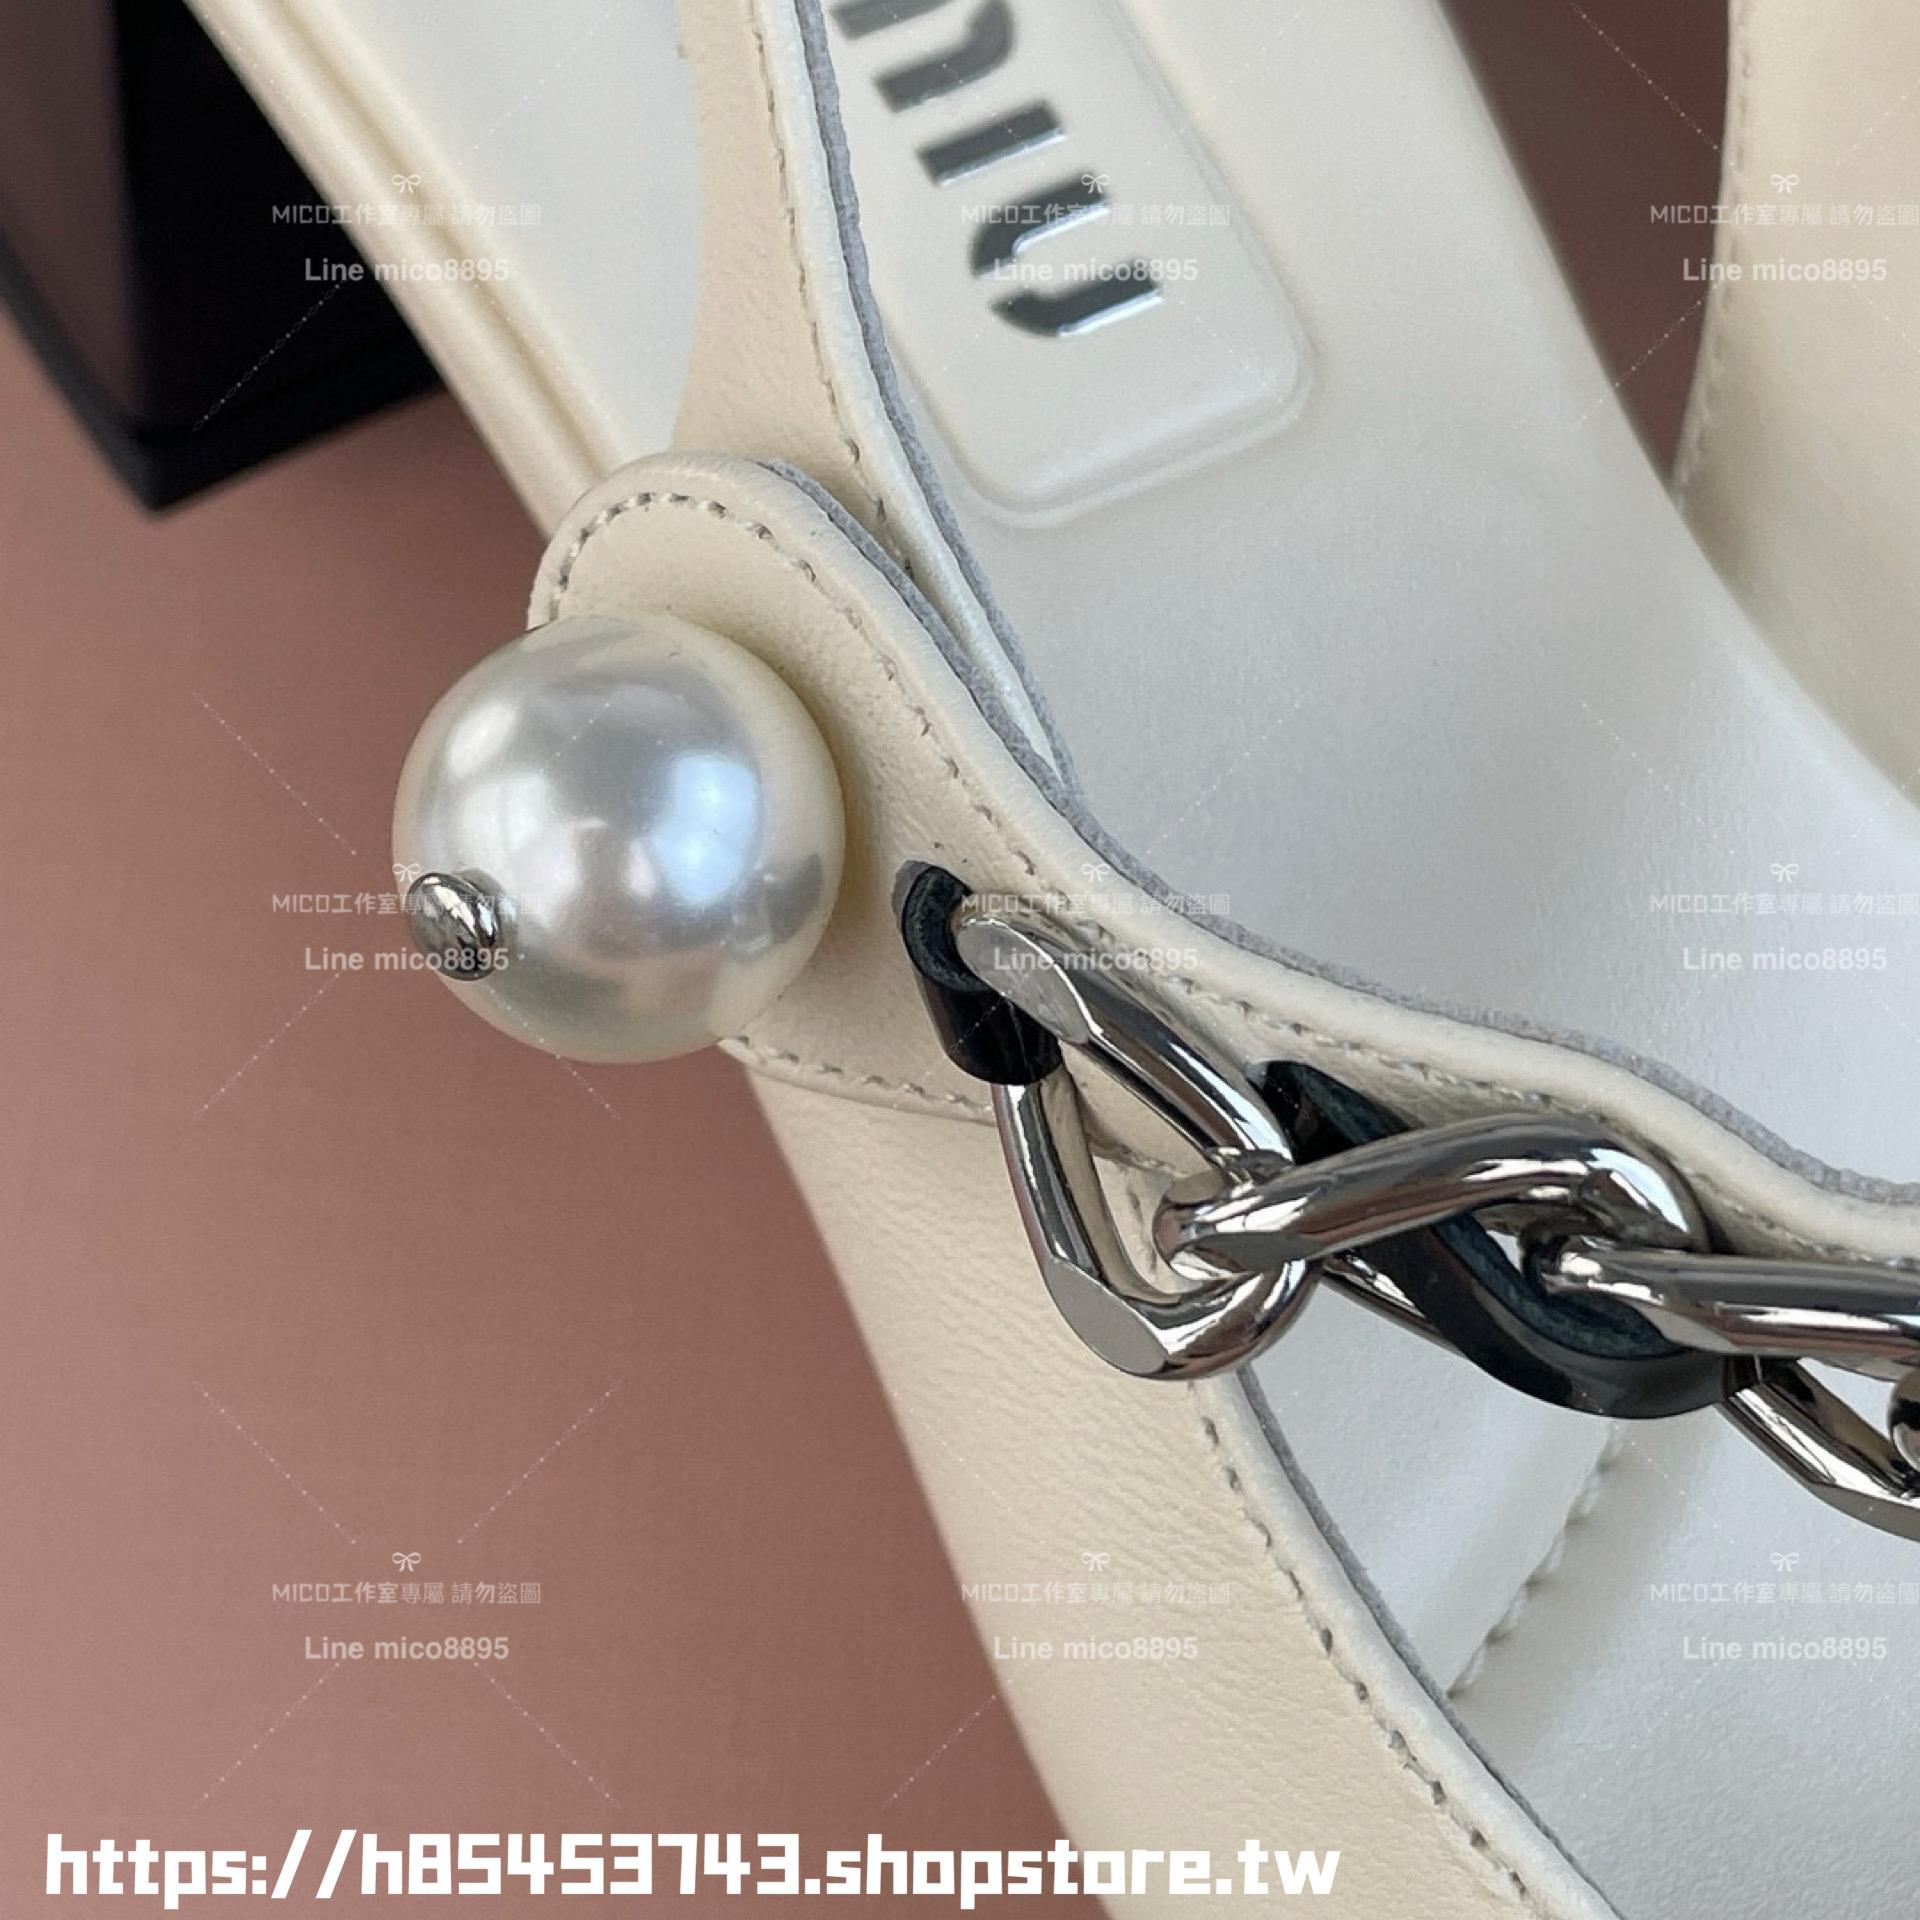 MiuMiu 皮革白 復古可愛微方頭珍珠繫帶後空涼鞋 瑪麗珍 4.5cm 35-39